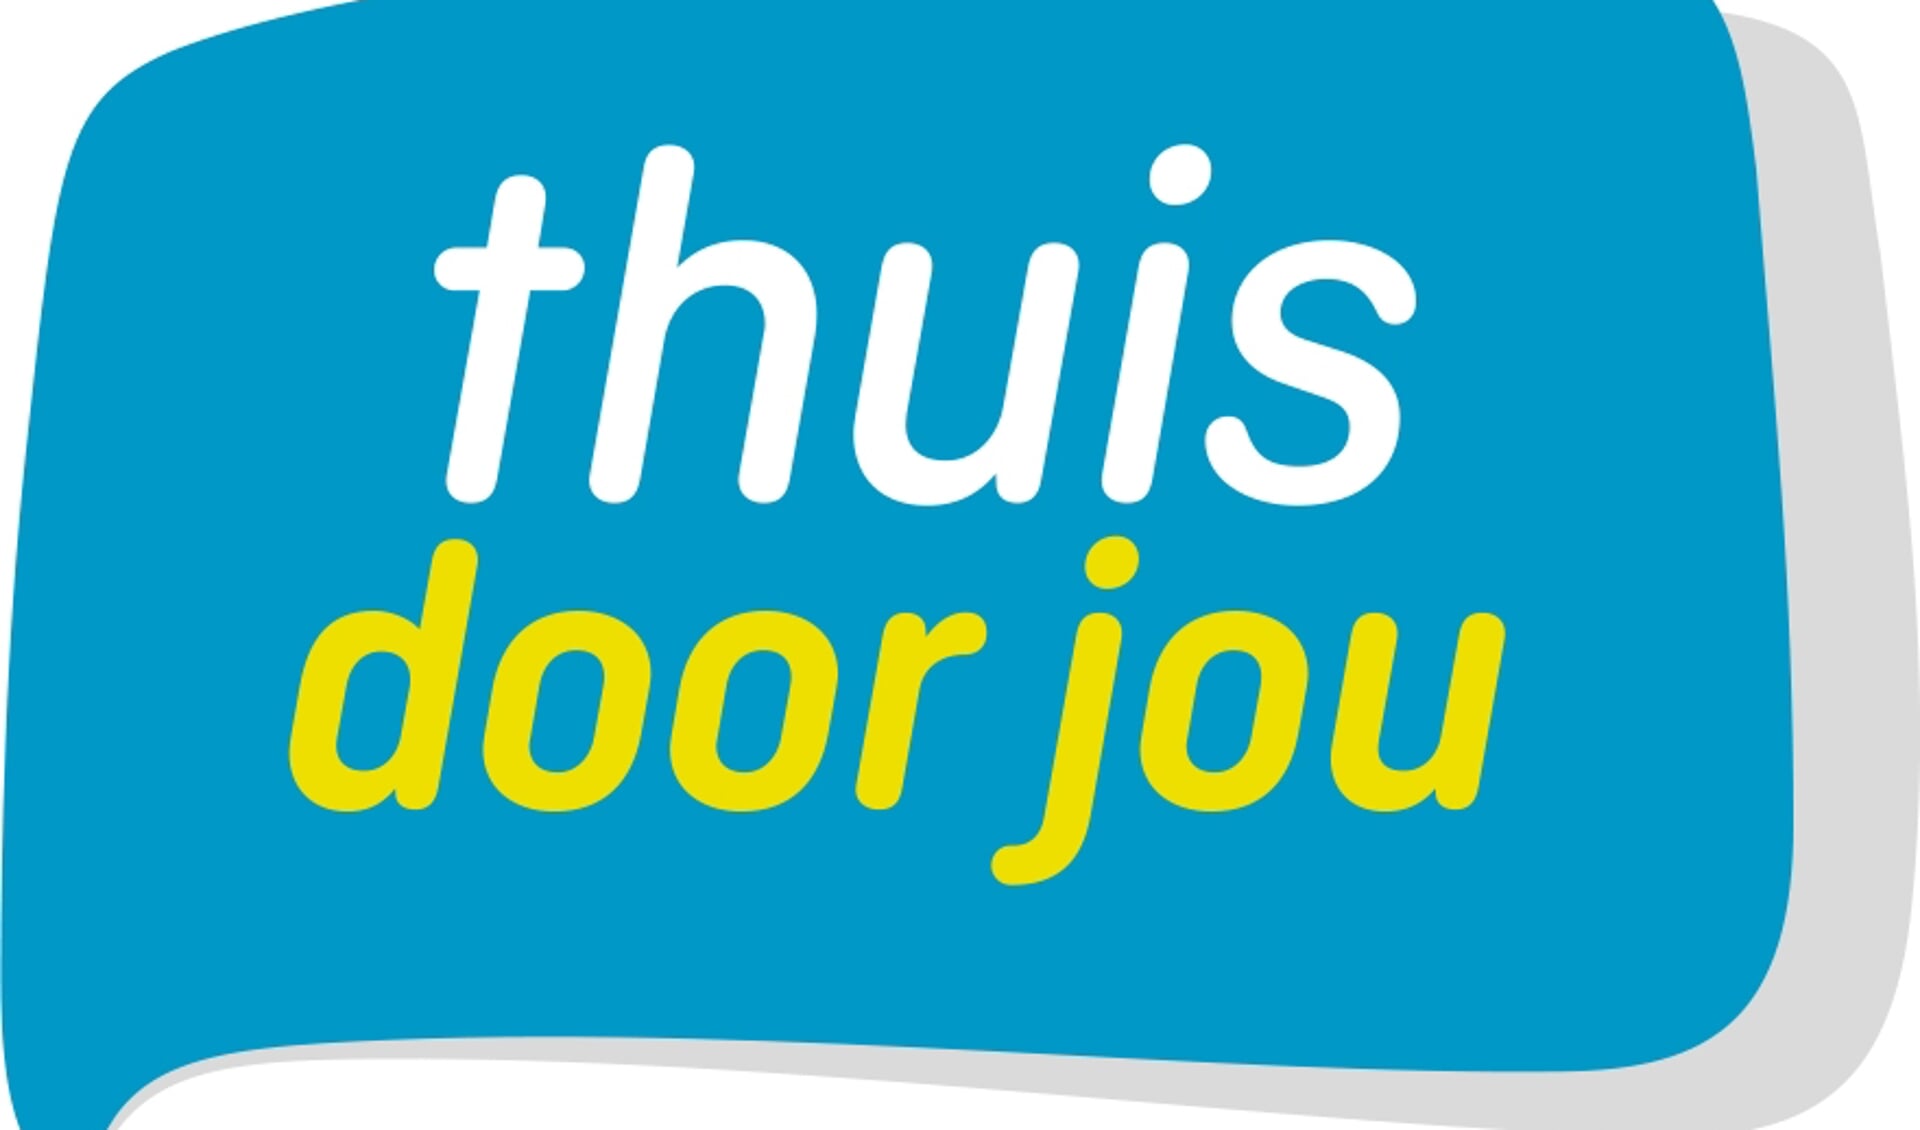 De pilot thuisdoorjou.nl loopt van januari 2021 tot en met juni 2022. 